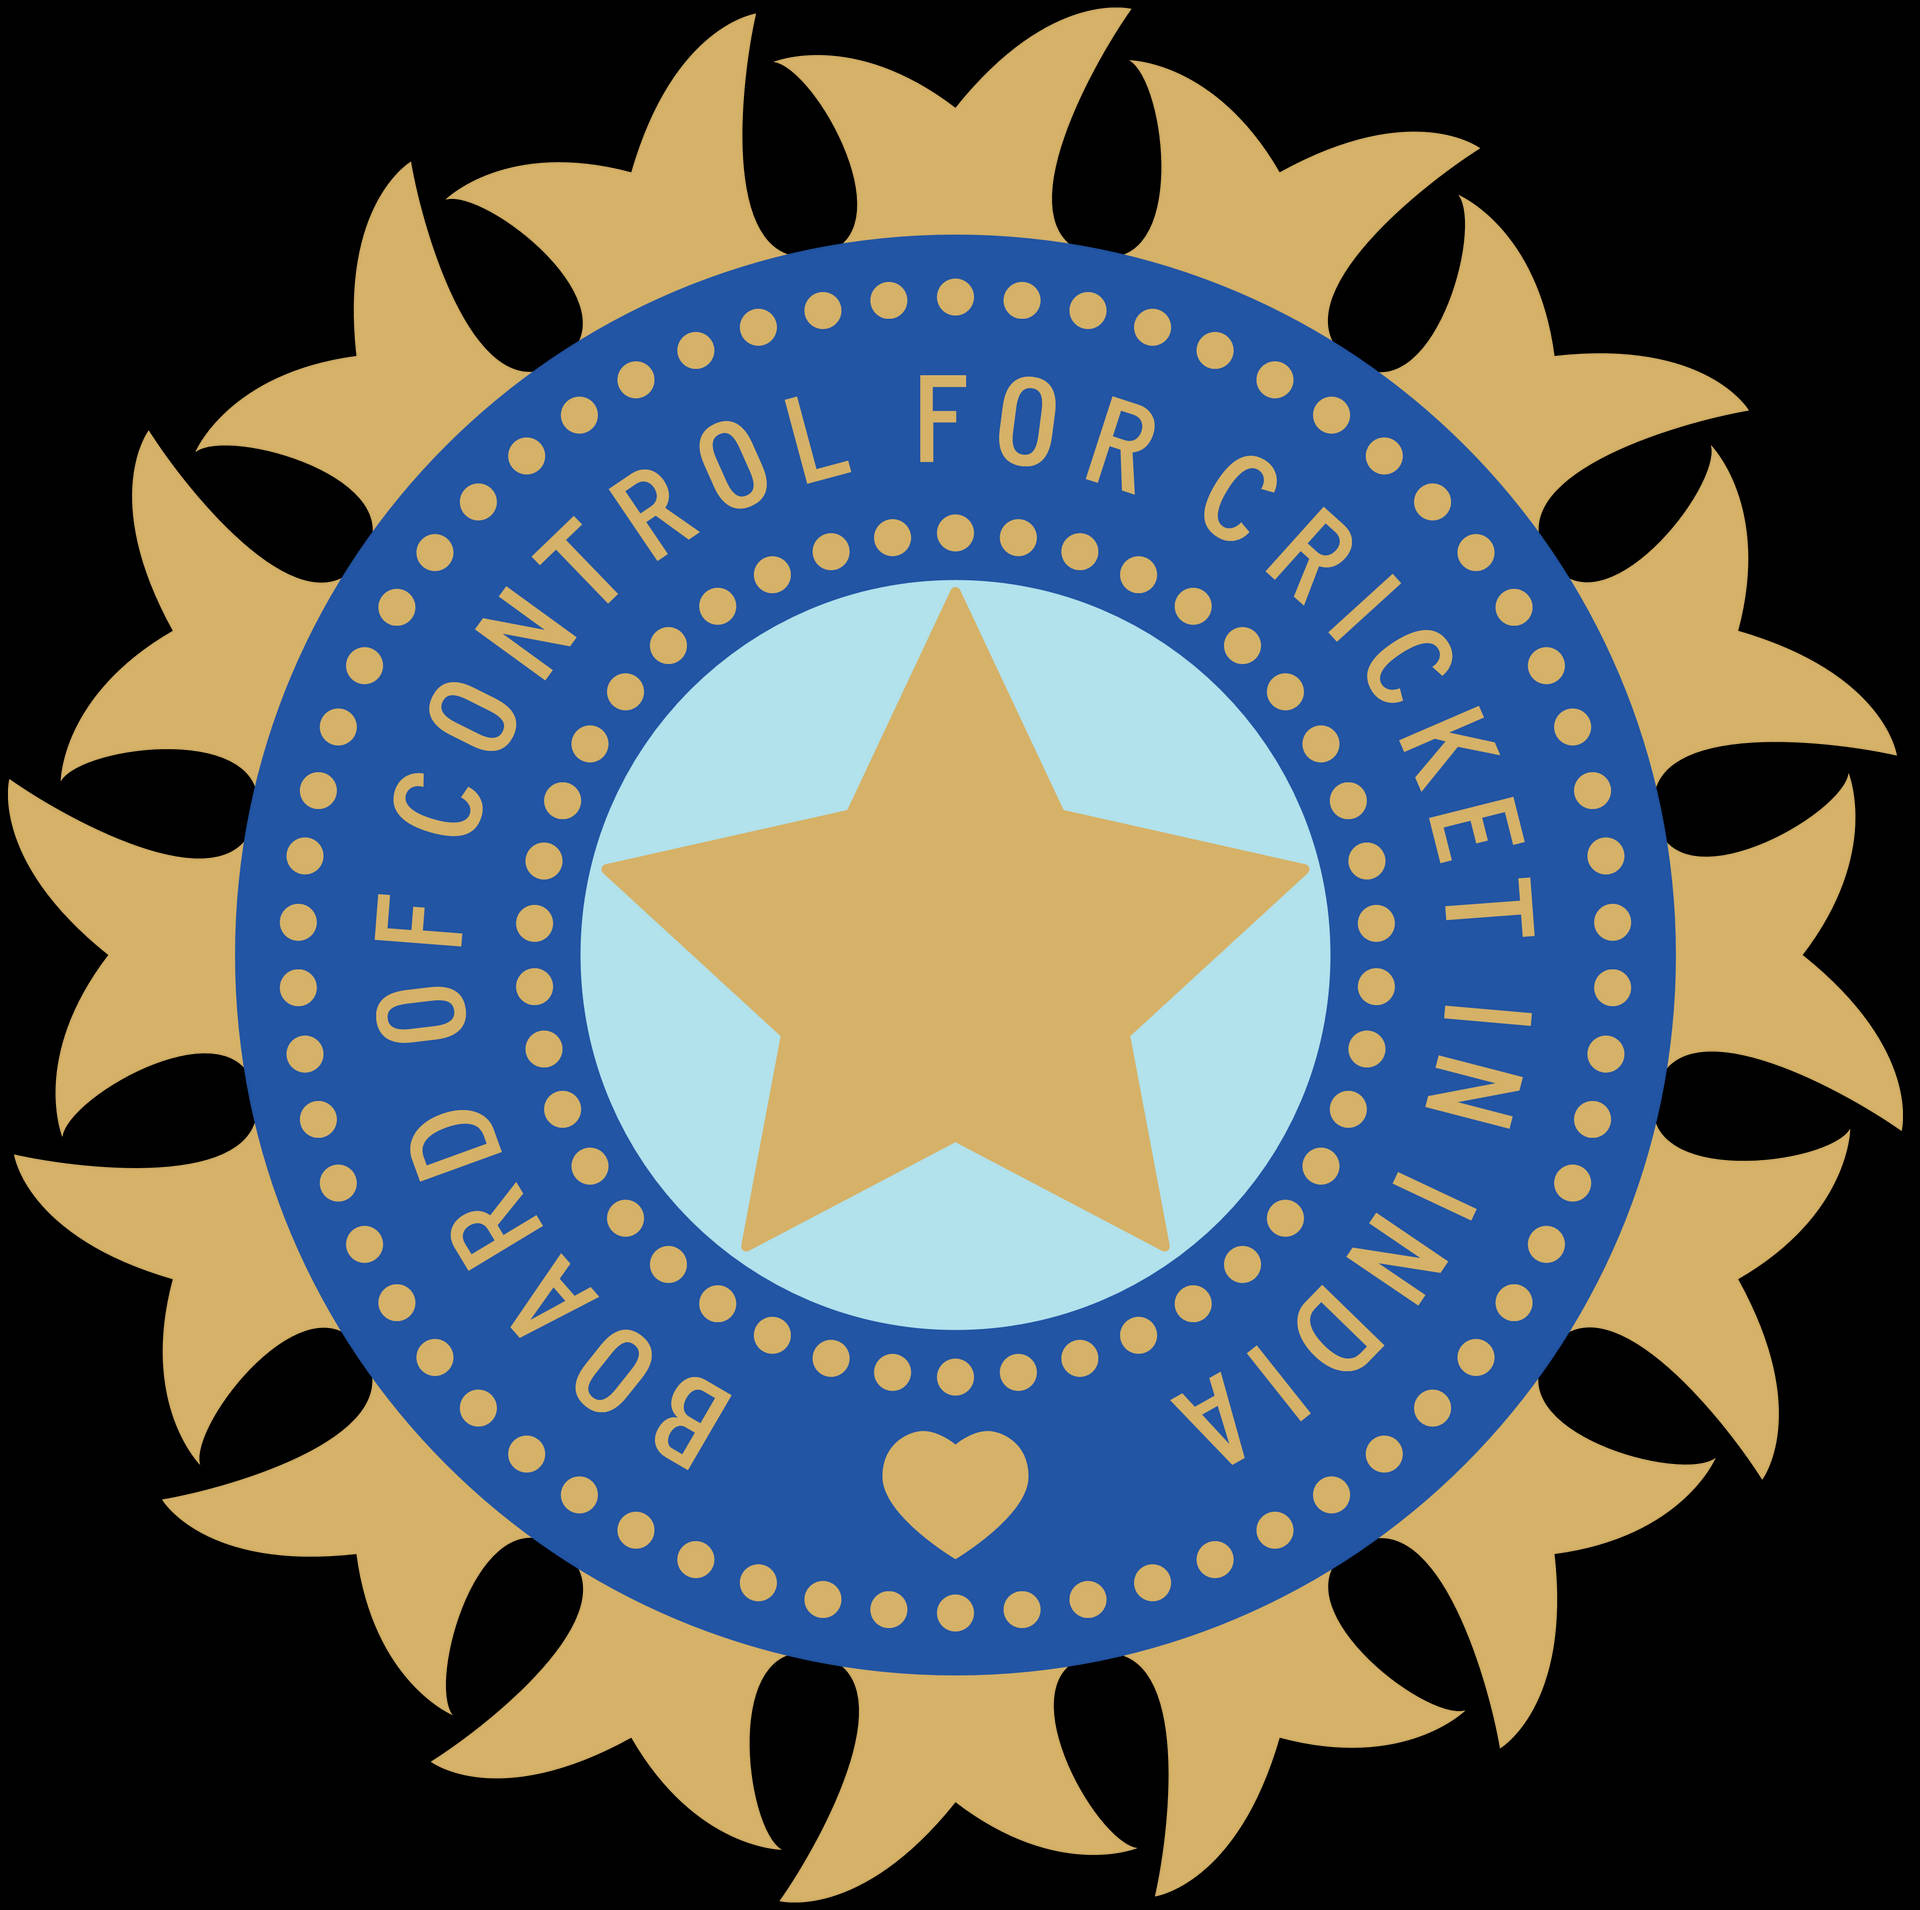 Indischescricket-team-logo - Bcci Wallpaper